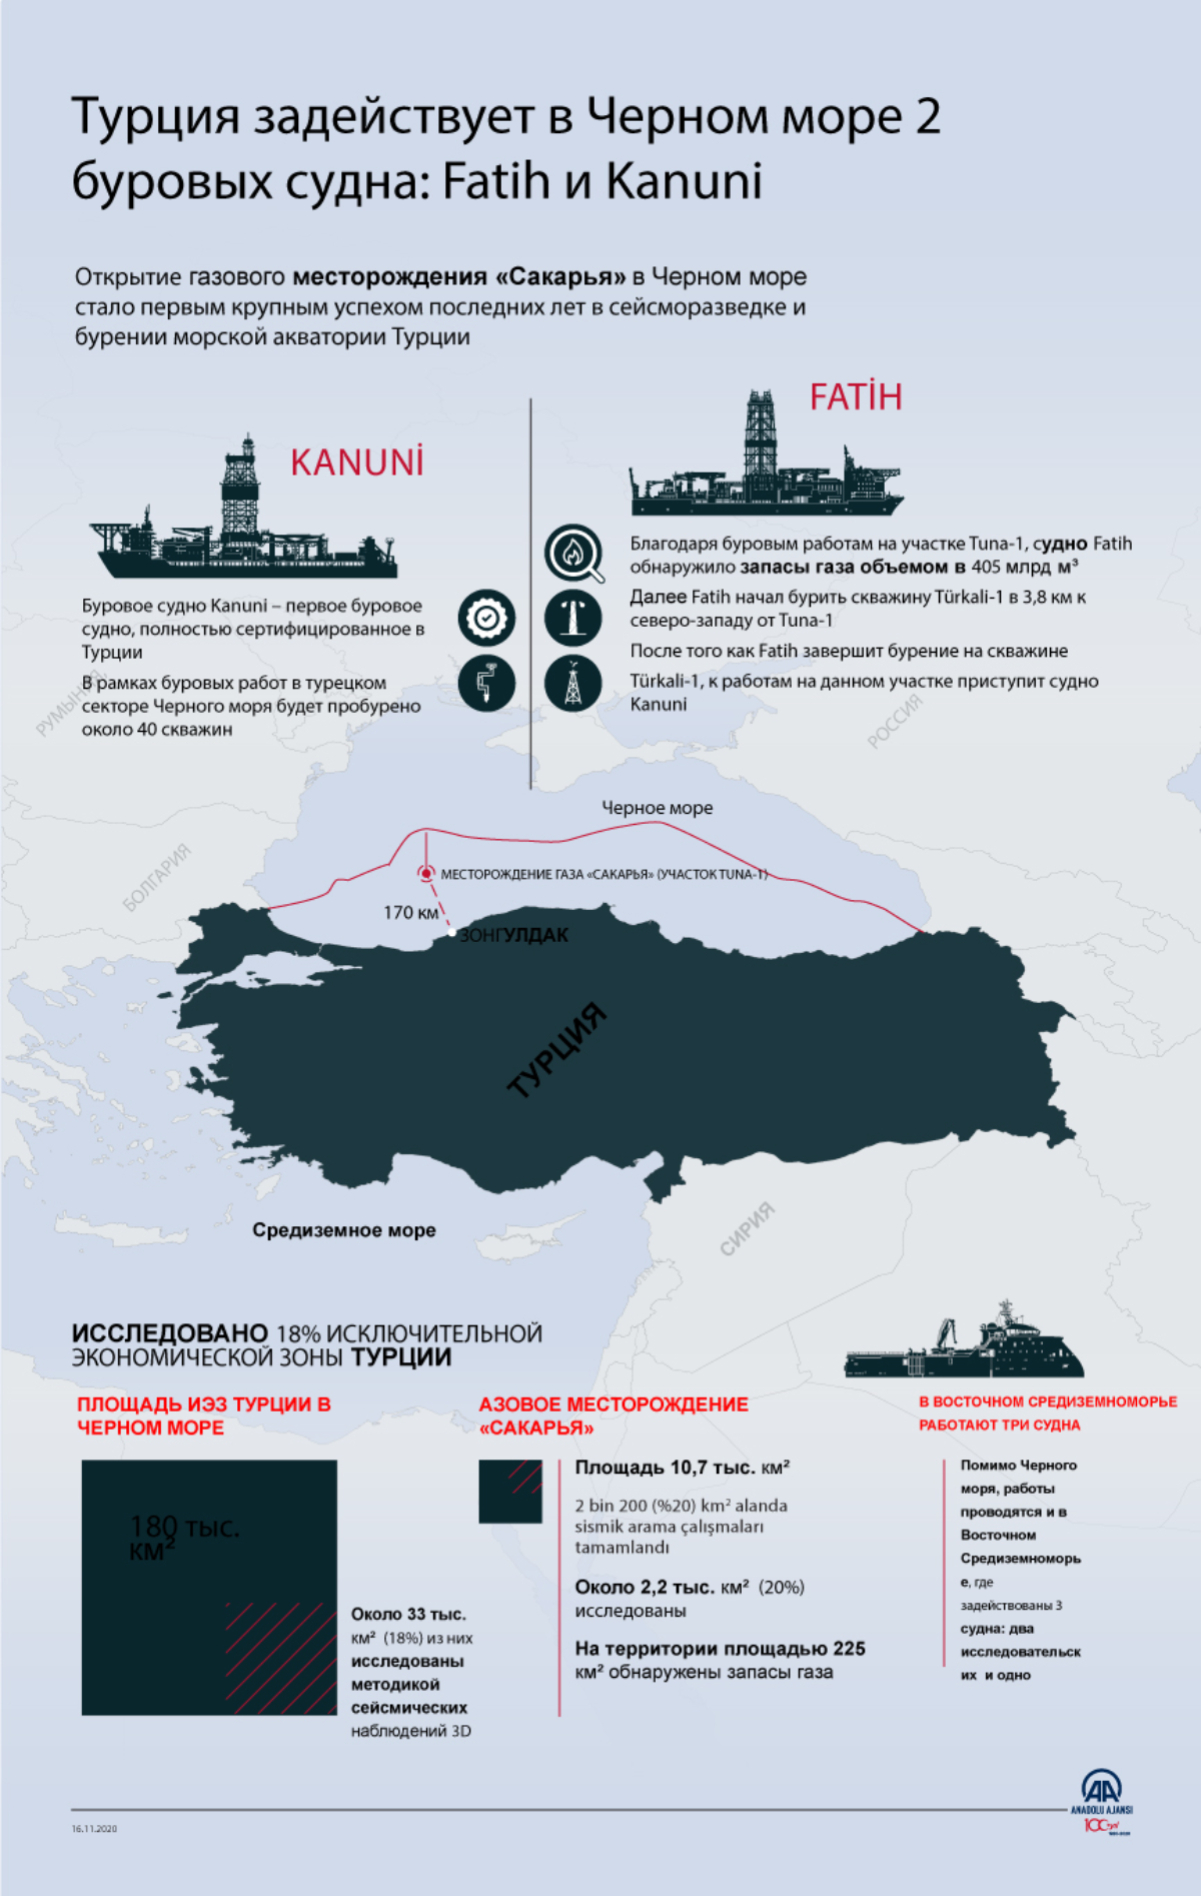 Турция задействует в Черном море 2 буровых судна: Fatih и Kanuni